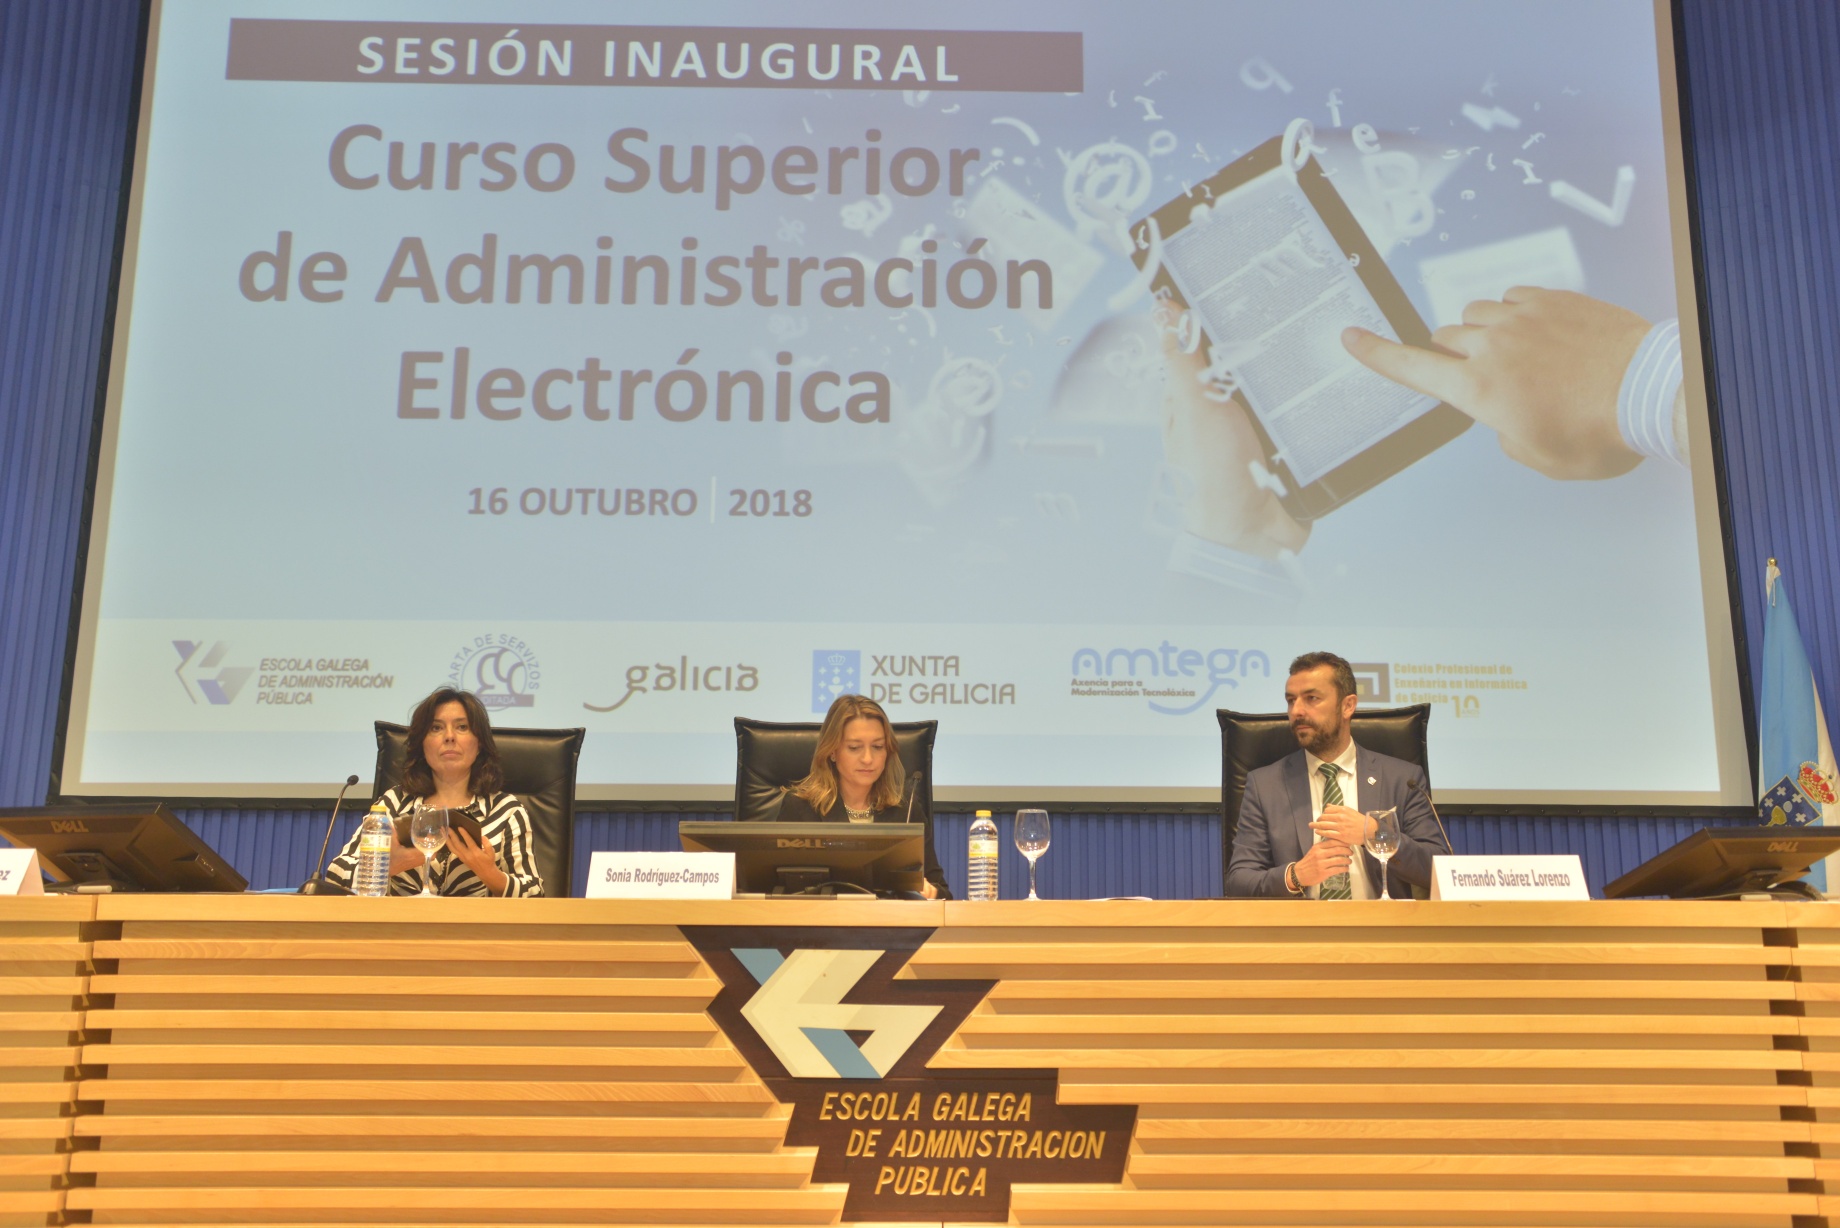 Inauguración do Curso Superior de Administración Electrónica